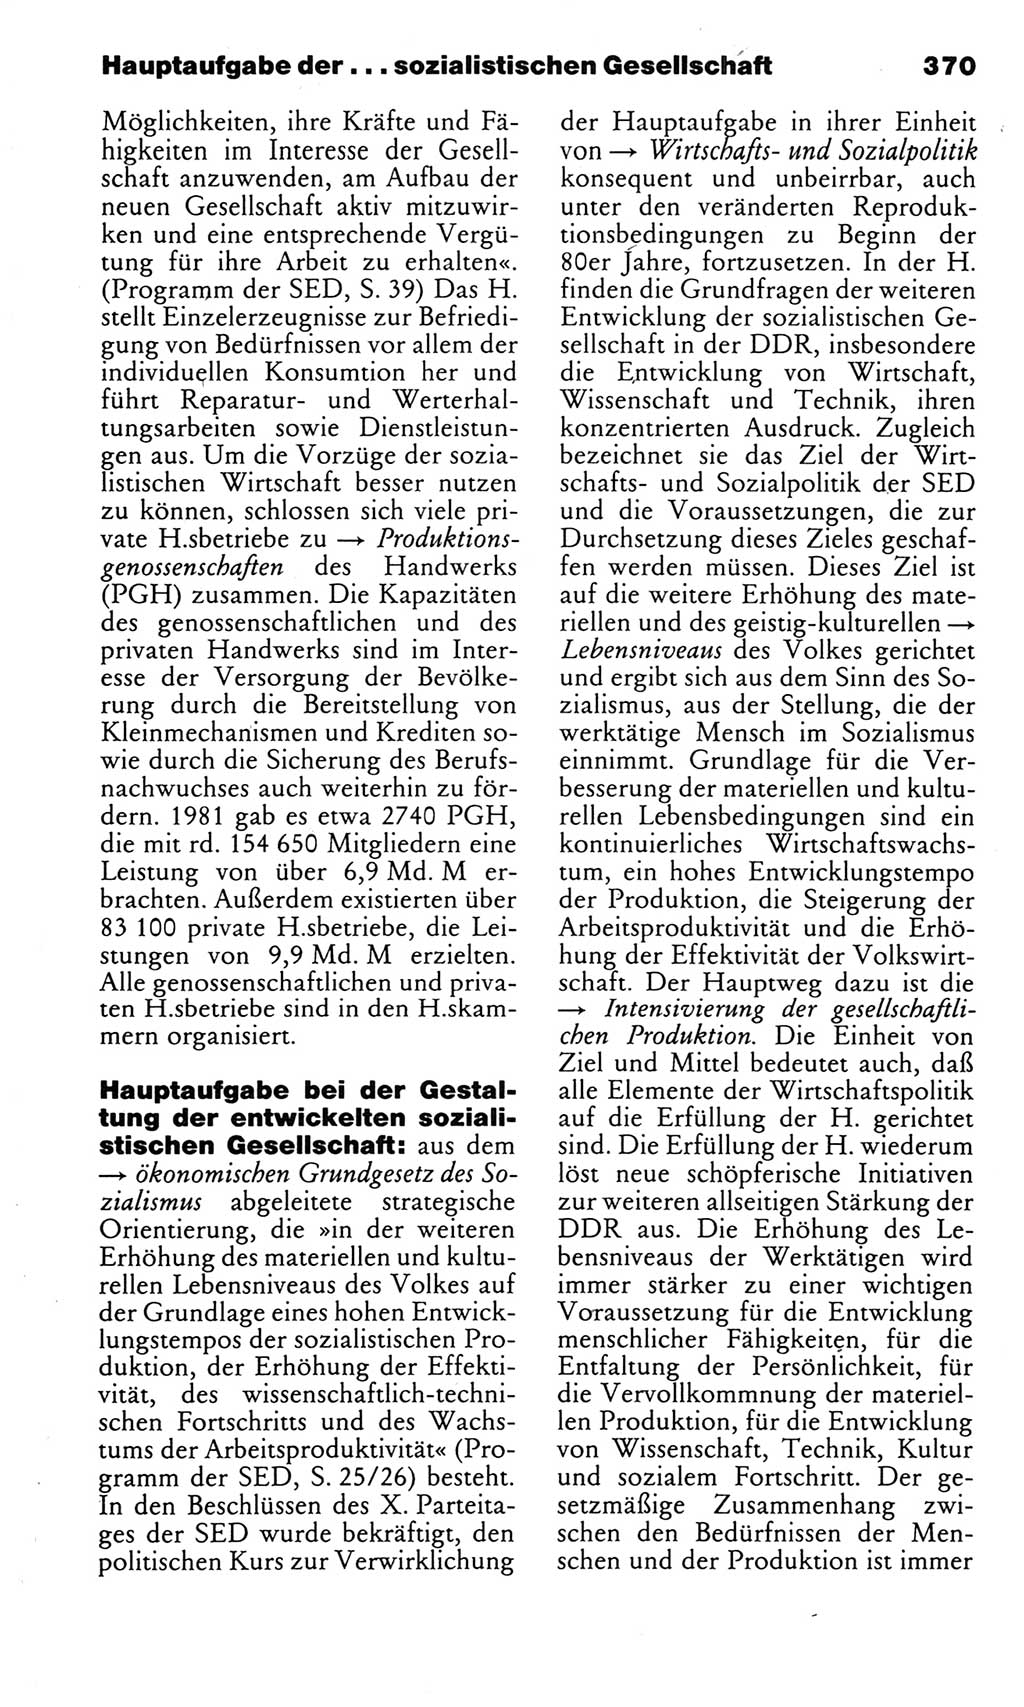 Kleines politisches Wörterbuch [Deutsche Demokratische Republik (DDR)] 1983, Seite 370 (Kl. pol. Wb. DDR 1983, S. 370)